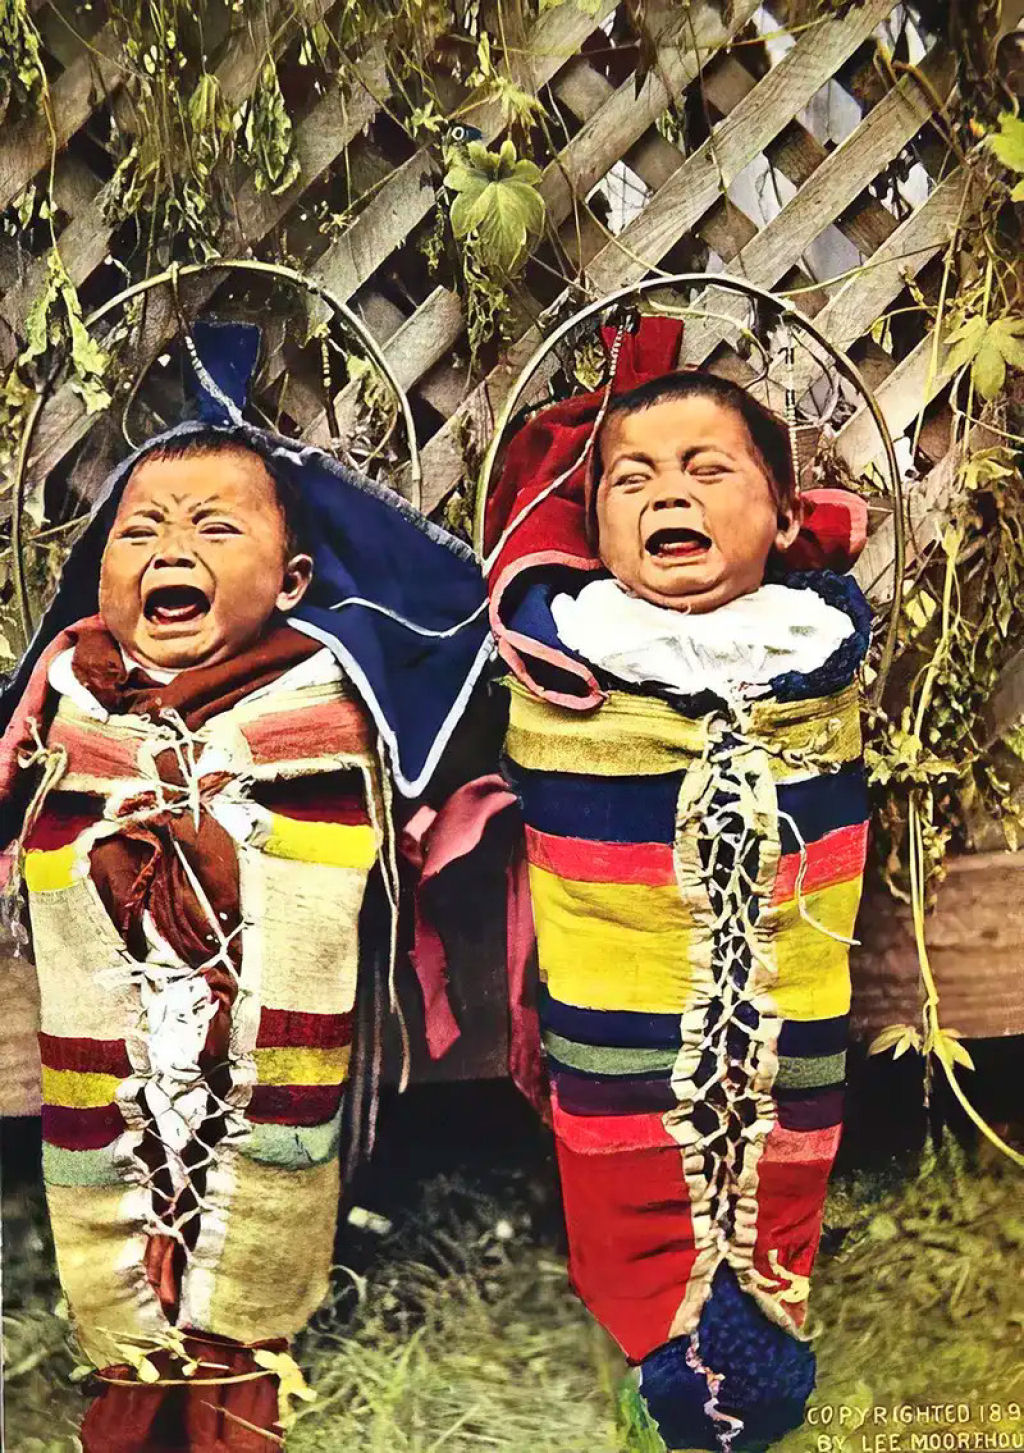 Impressionantes fotos históricas coloridas de nativos americanos do final do século 19 e início do século 20 14